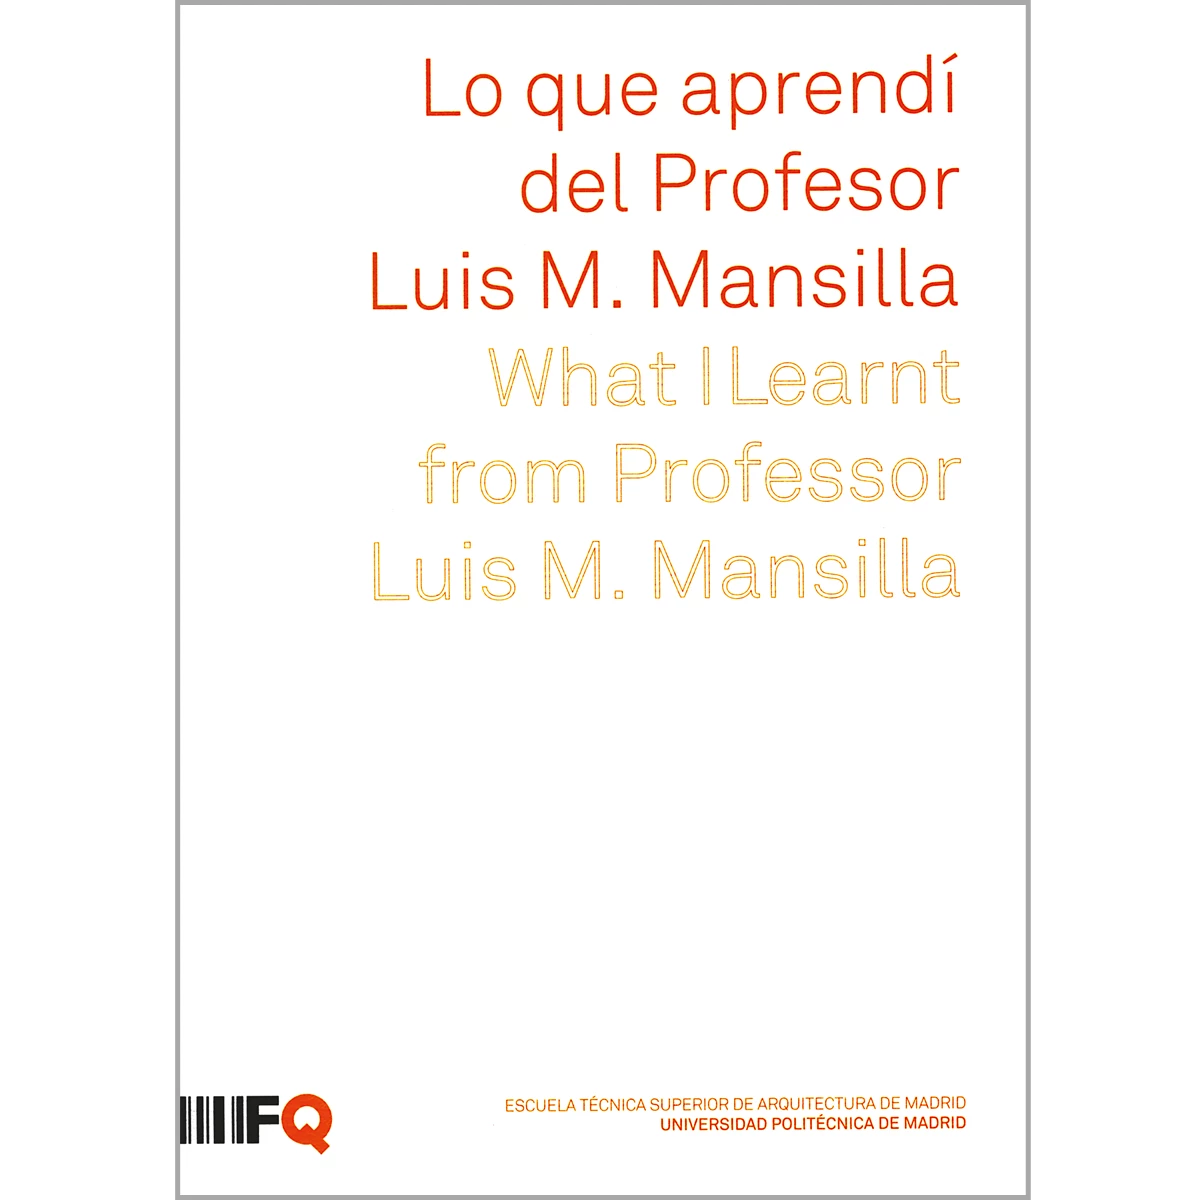 Lo que aprendí del Profesor  Luis M. Mansilla